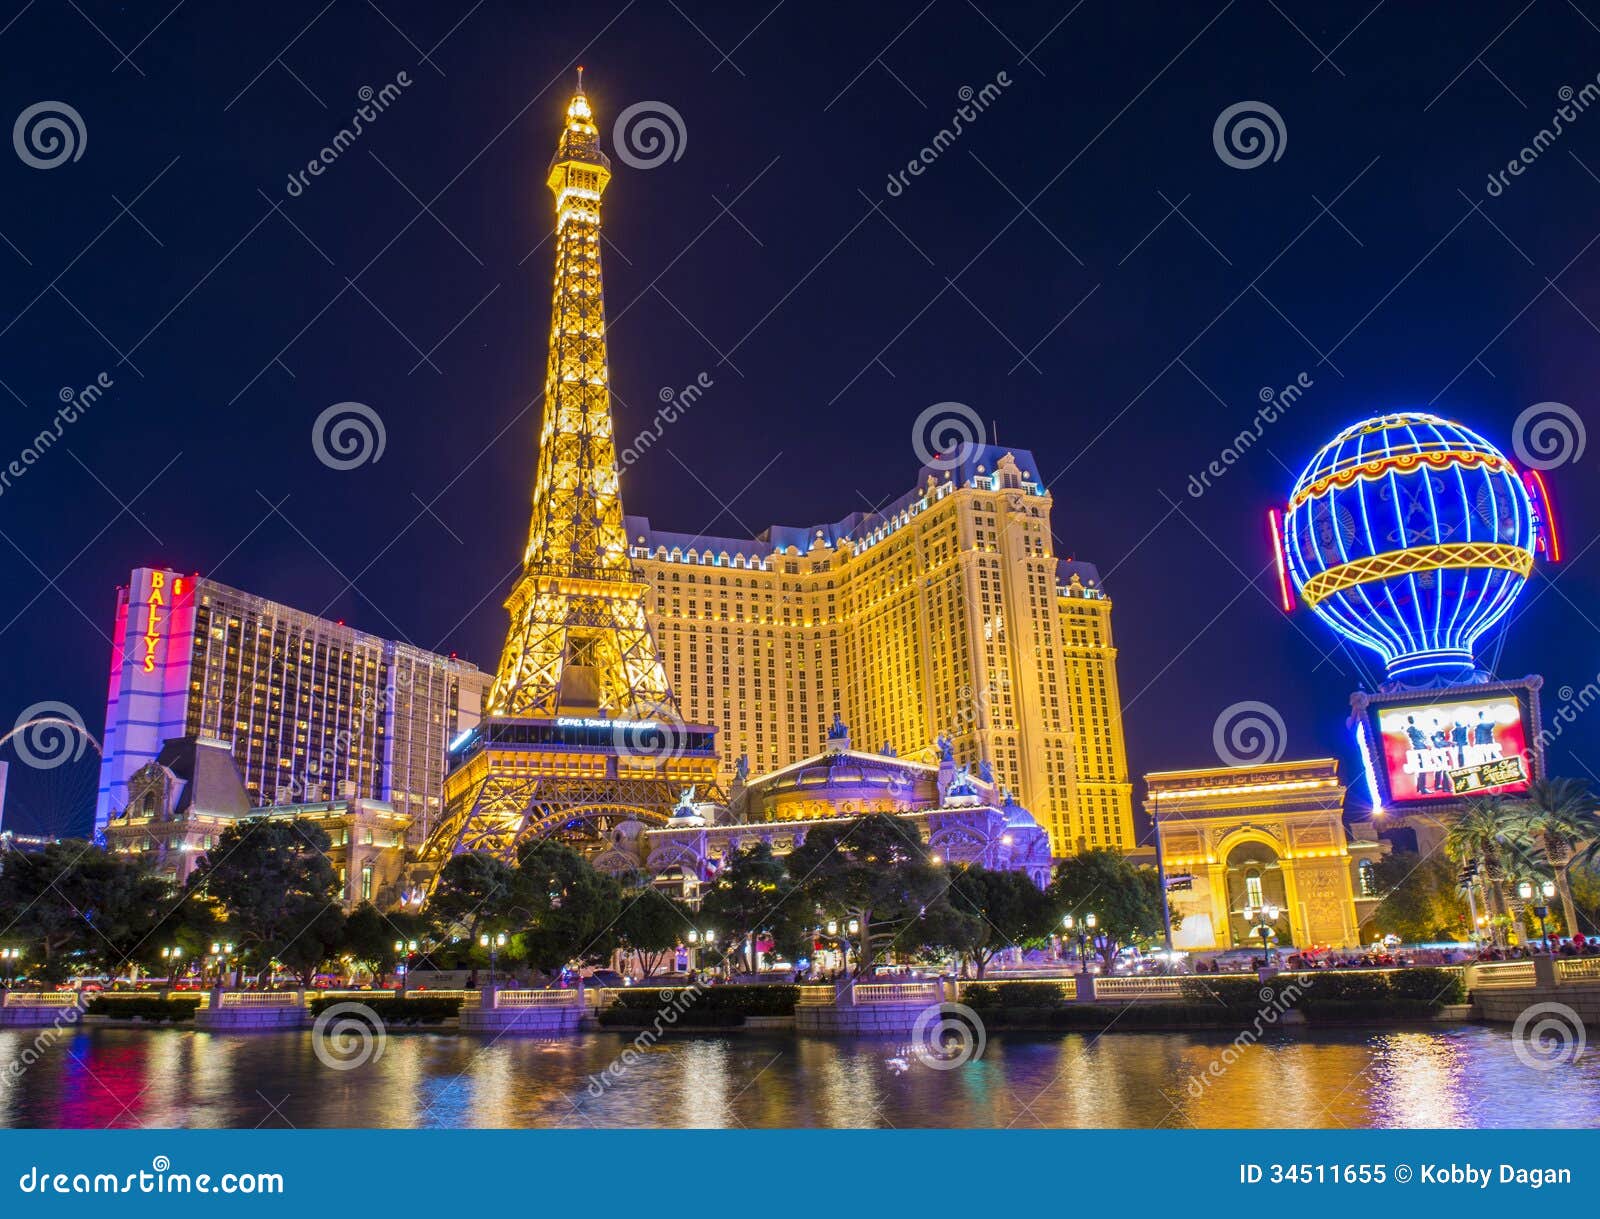 Las Vegas Usa Casino Login